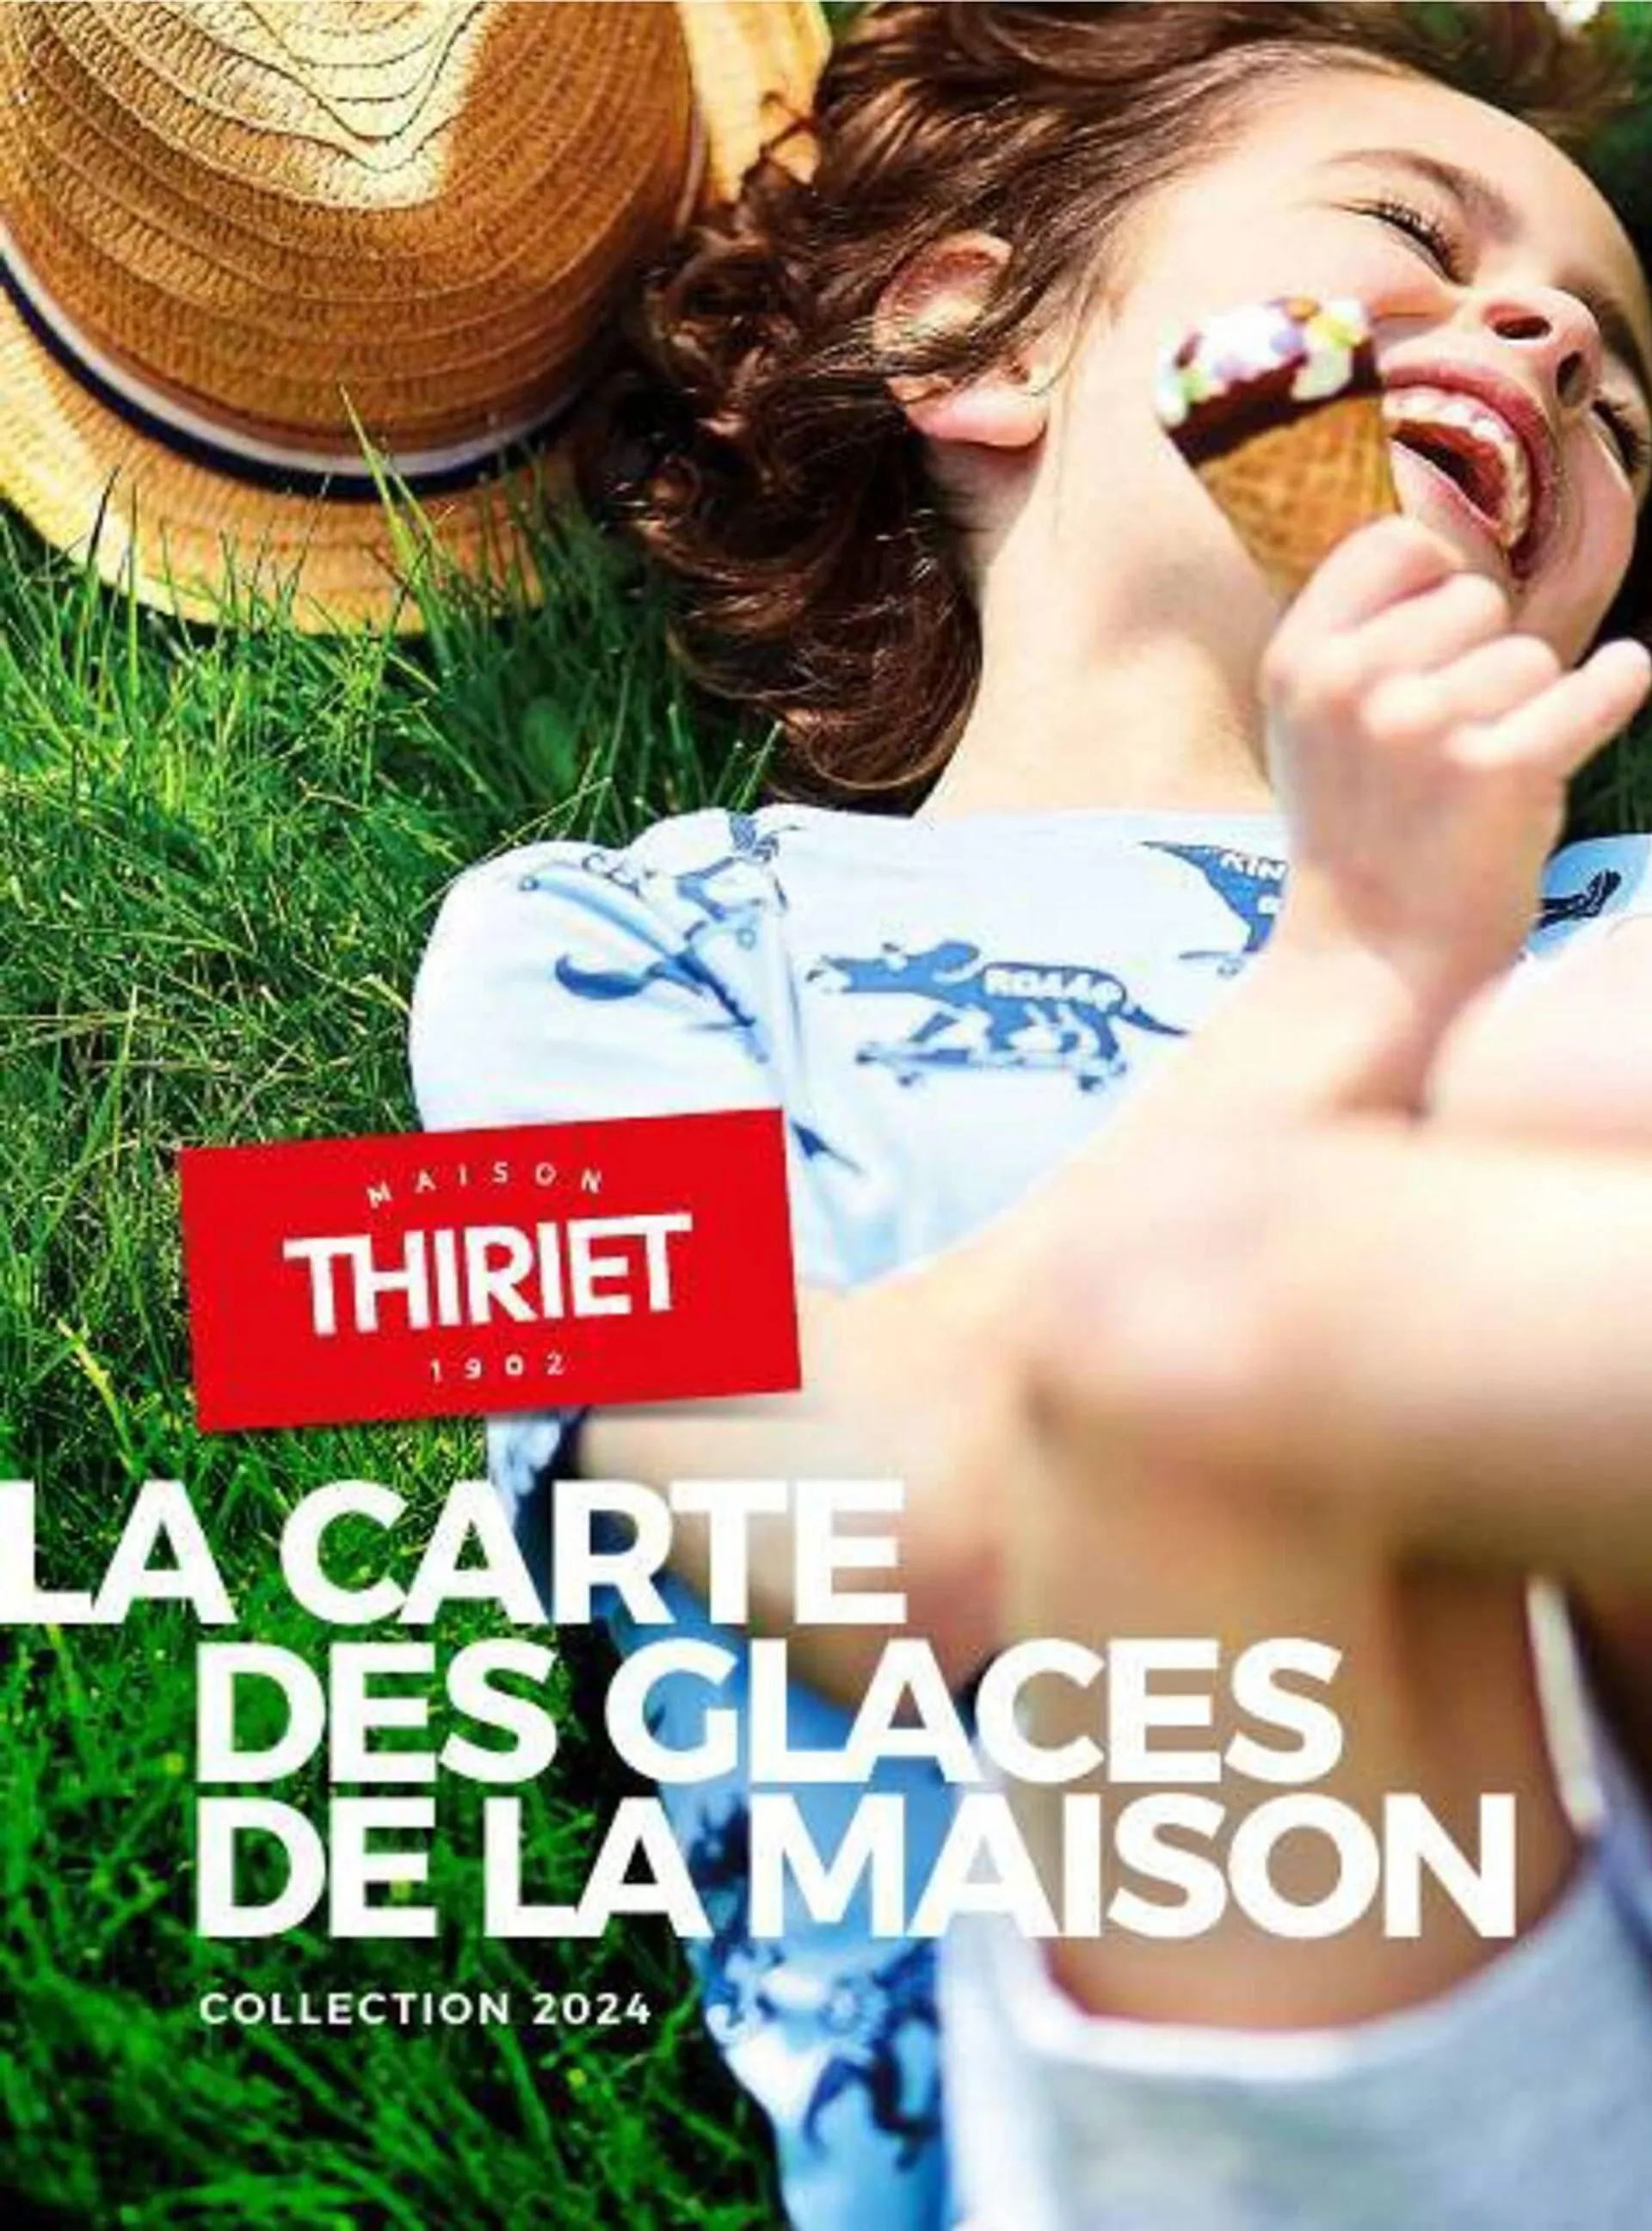 Catalogue Thiriet - 1